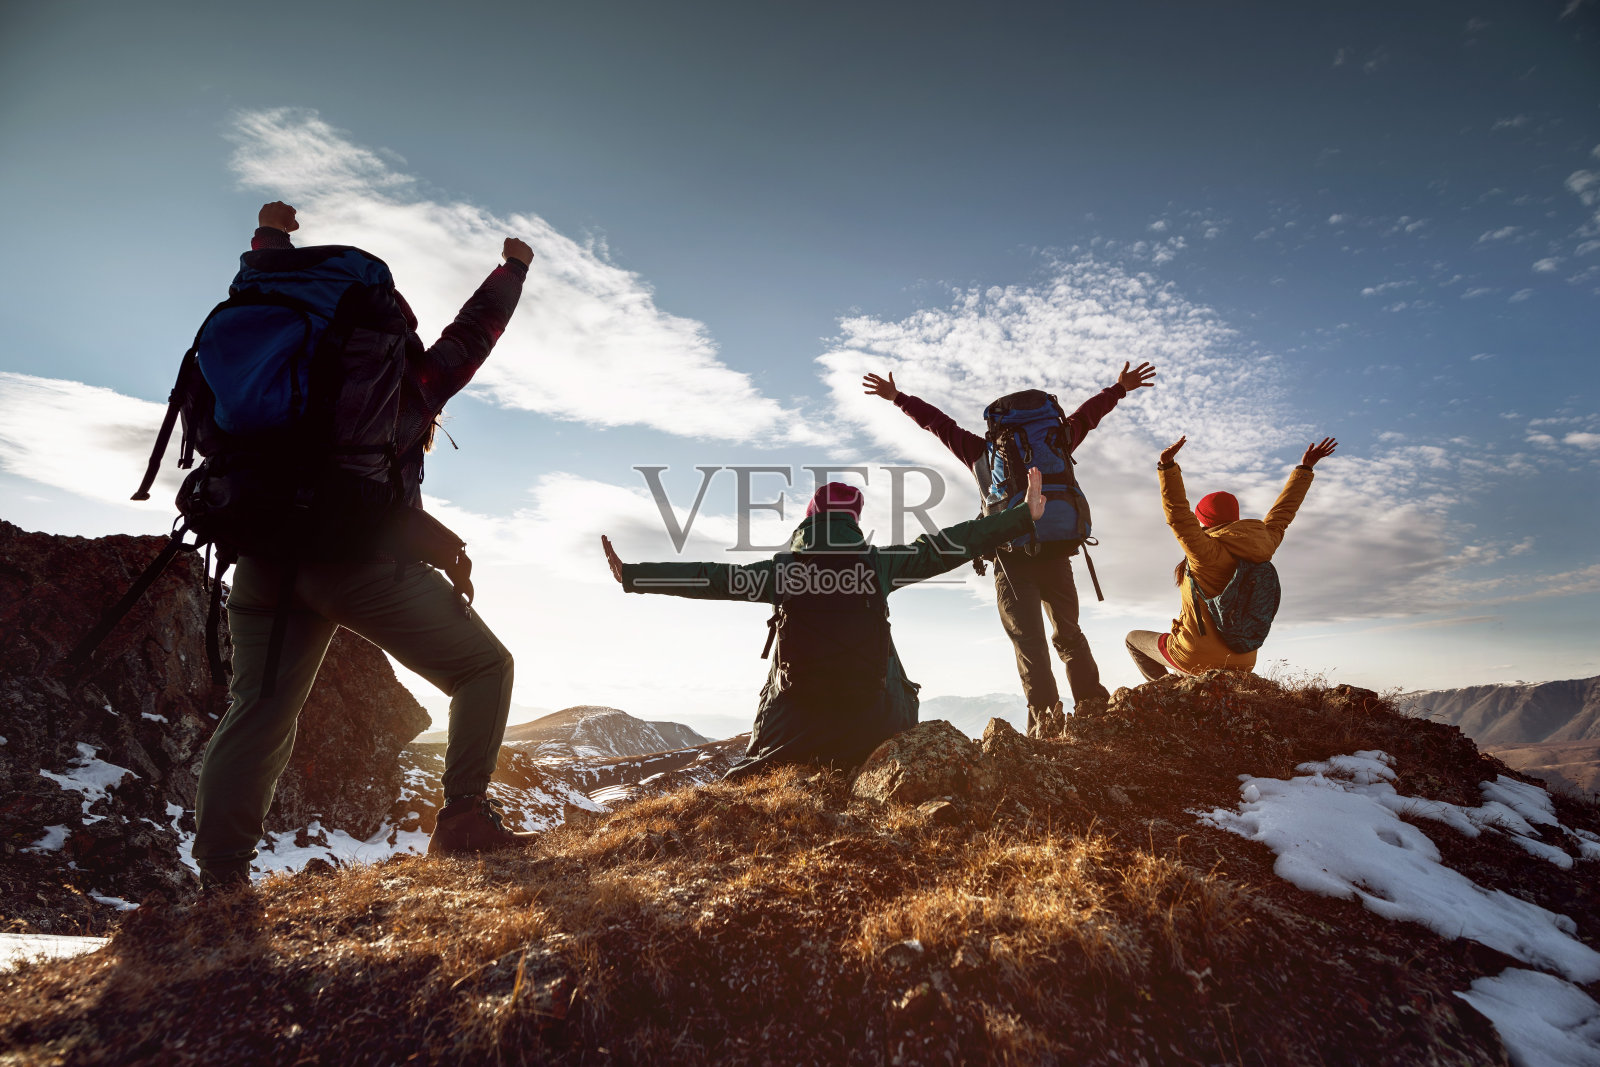 徒步旅行者摆出胜利者的姿势站在山顶照片摄影图片